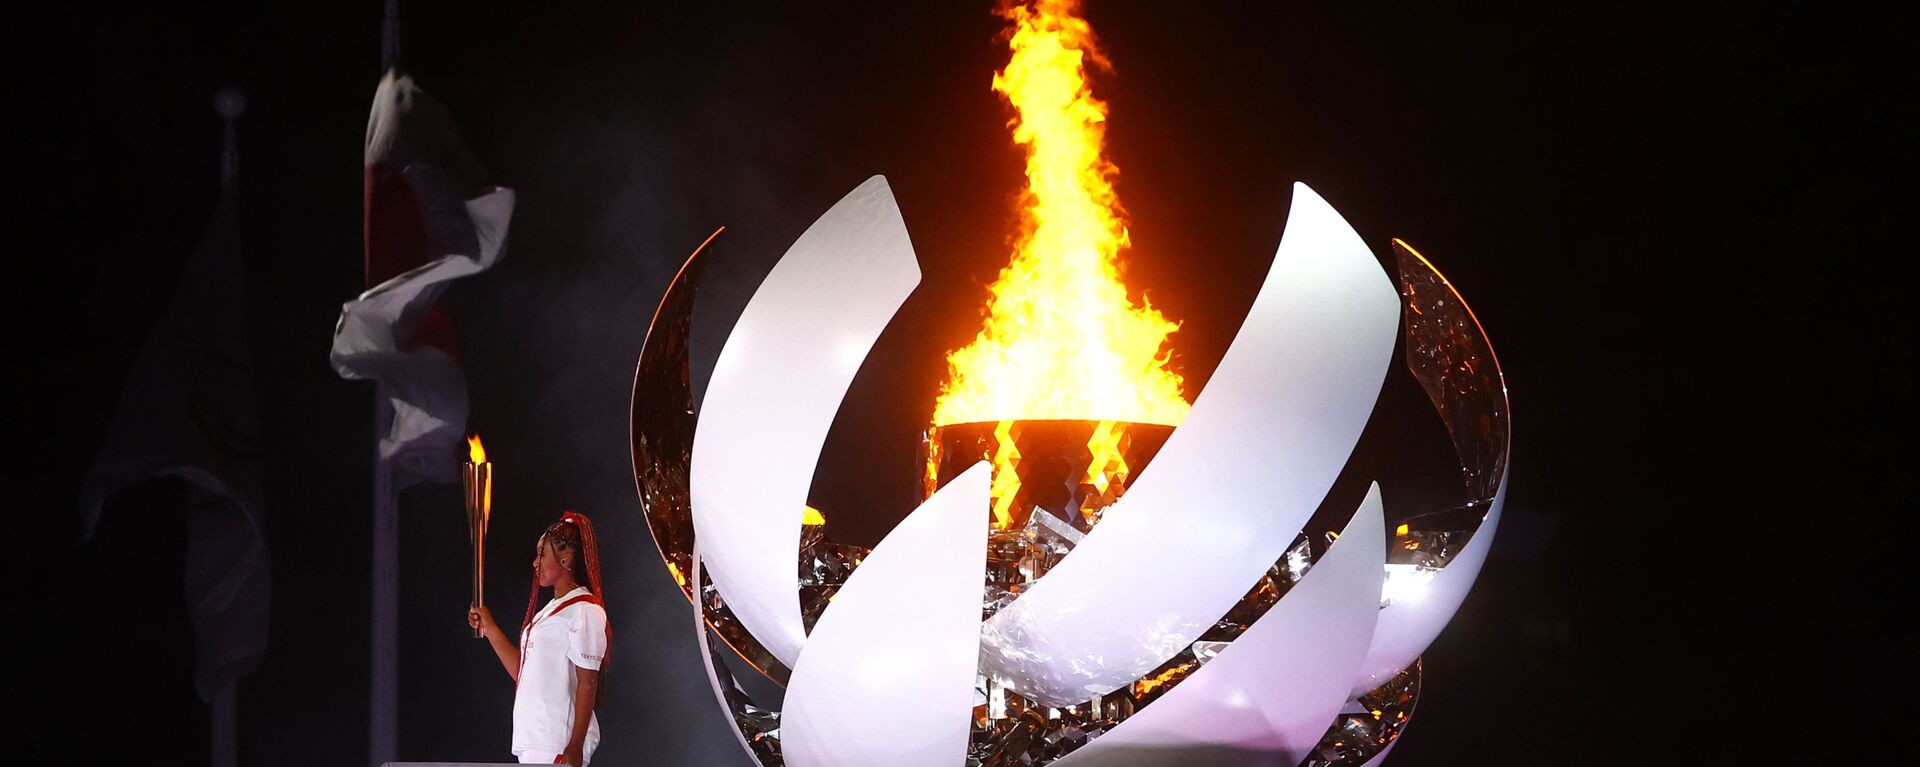 Наоми Осака из Японии держит олимпийский факел после зажжения олимпийского котла на церемонии открытия  - Sputnik Mundo, 1920, 24.07.2021